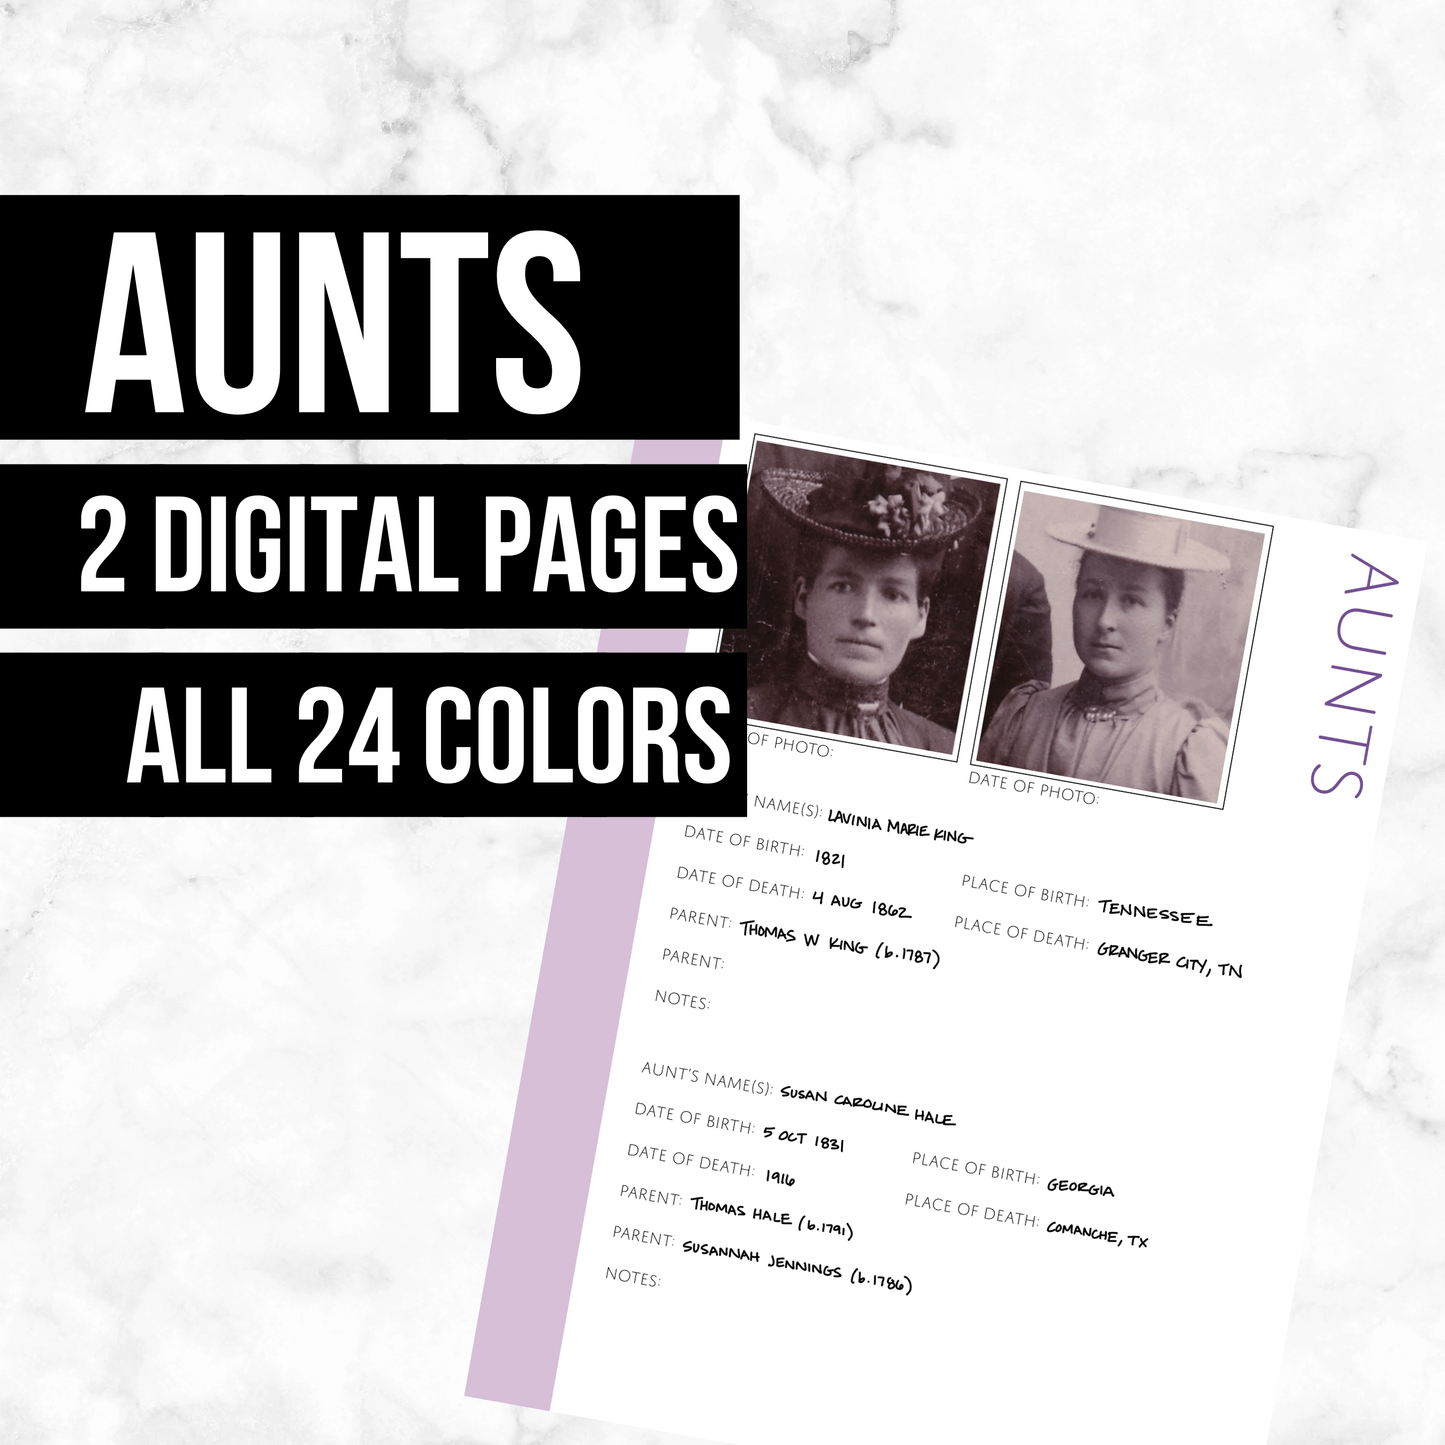 Aunts: Printable Genealogy Form (Digital Download)